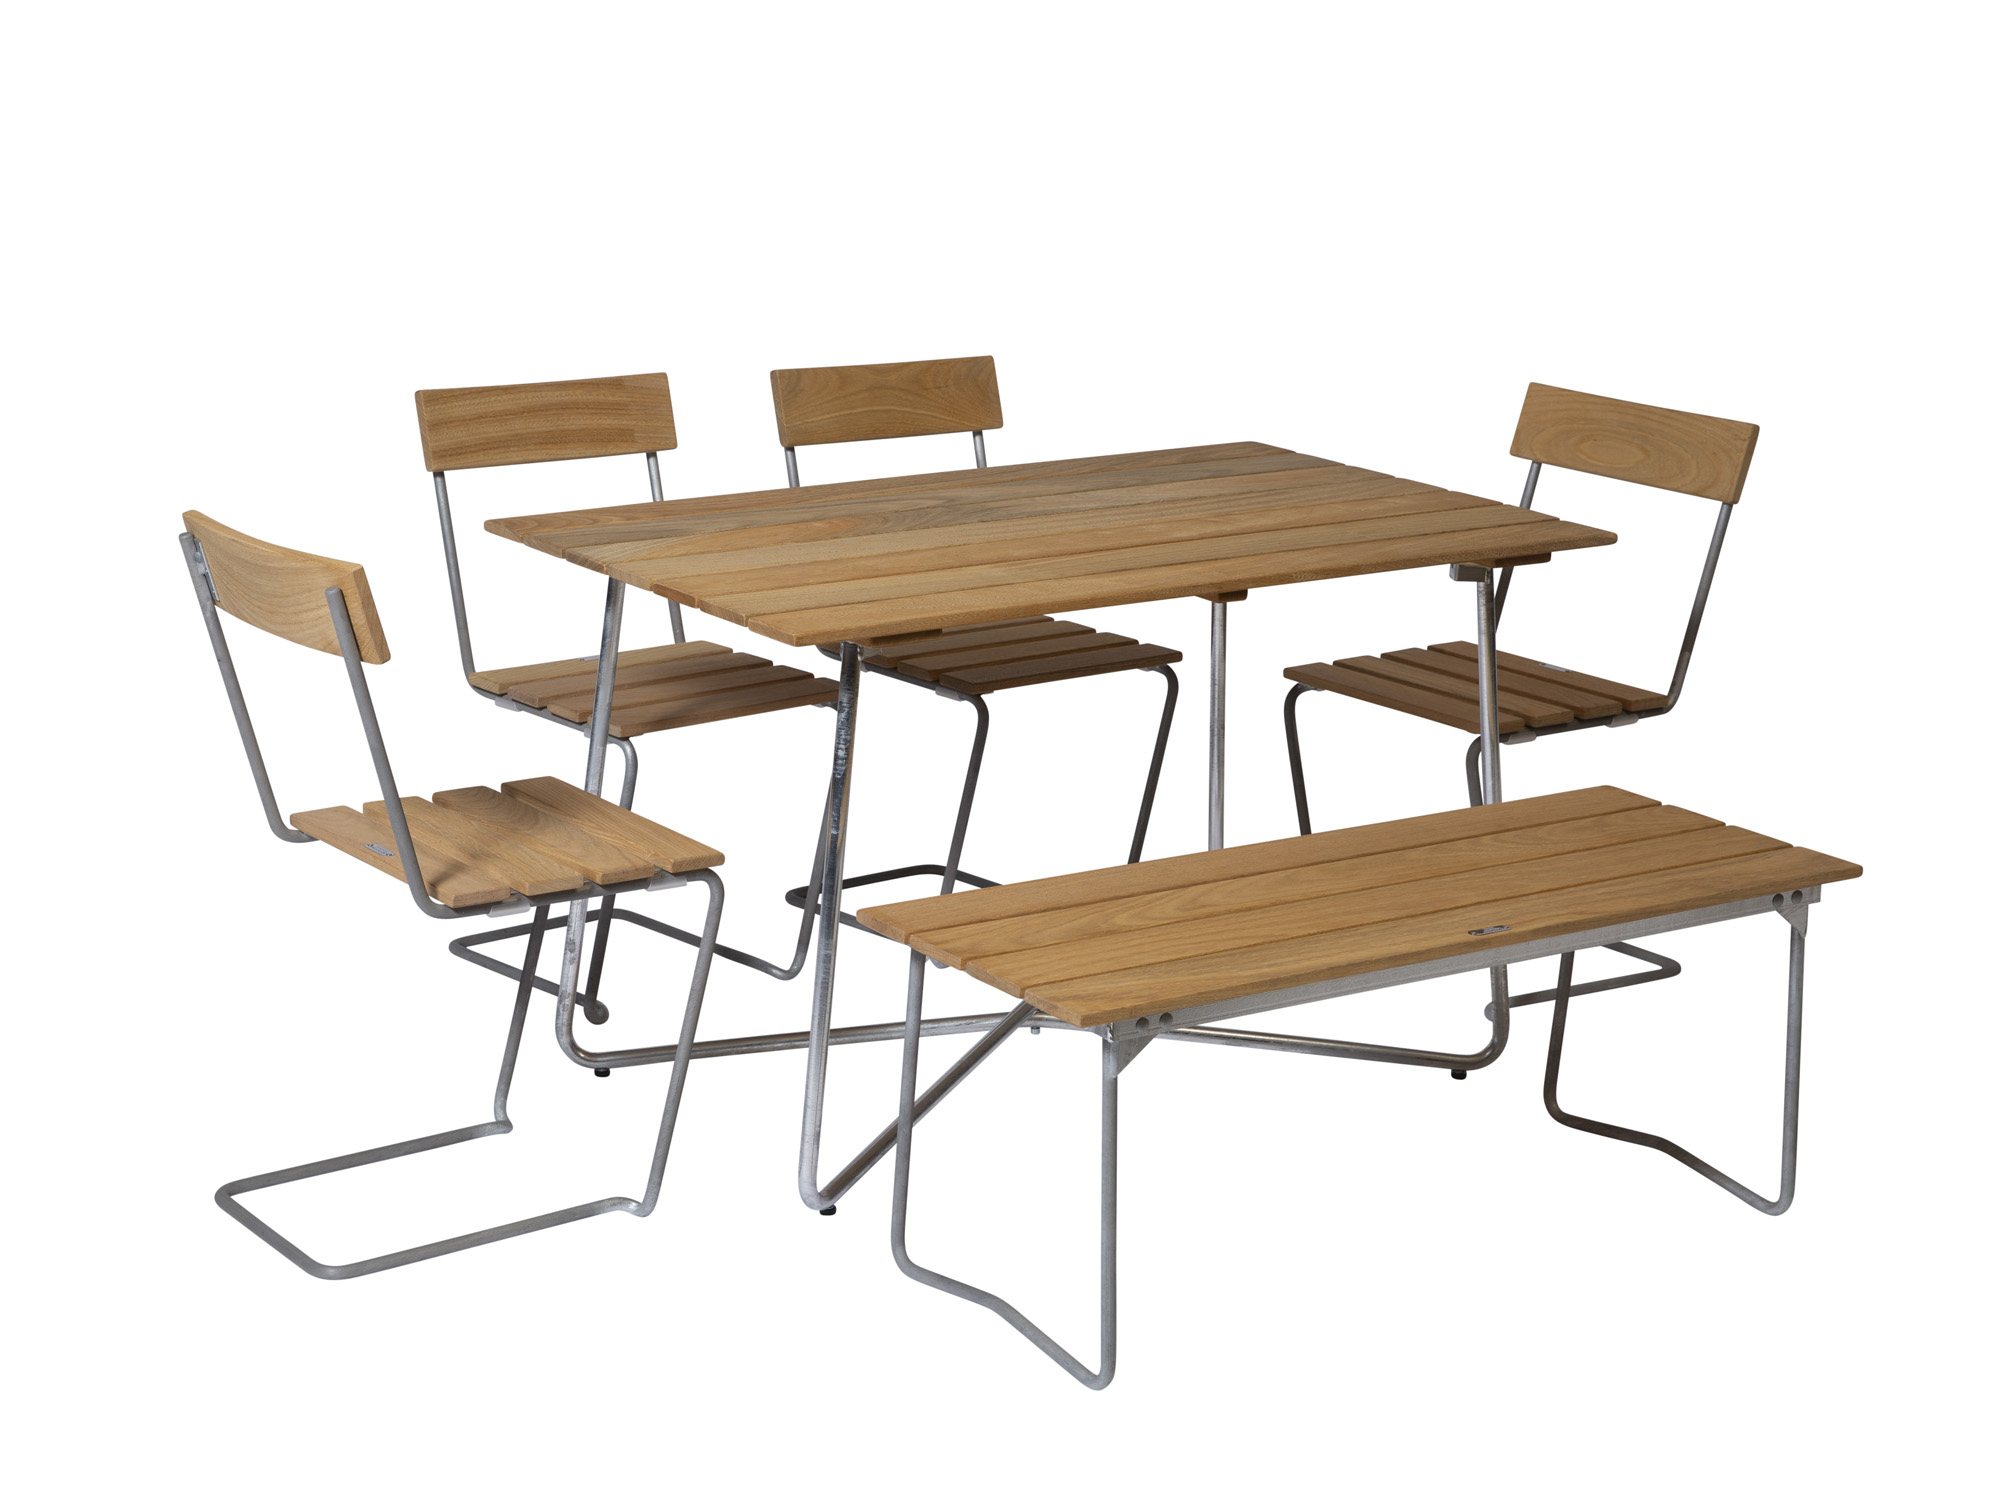 Grythyttan Stålmöbler B25 spisebordsæt Oljert eik/galvaniseret stål 4 stole, bænk 110 cm & bord 120 x 70 cm